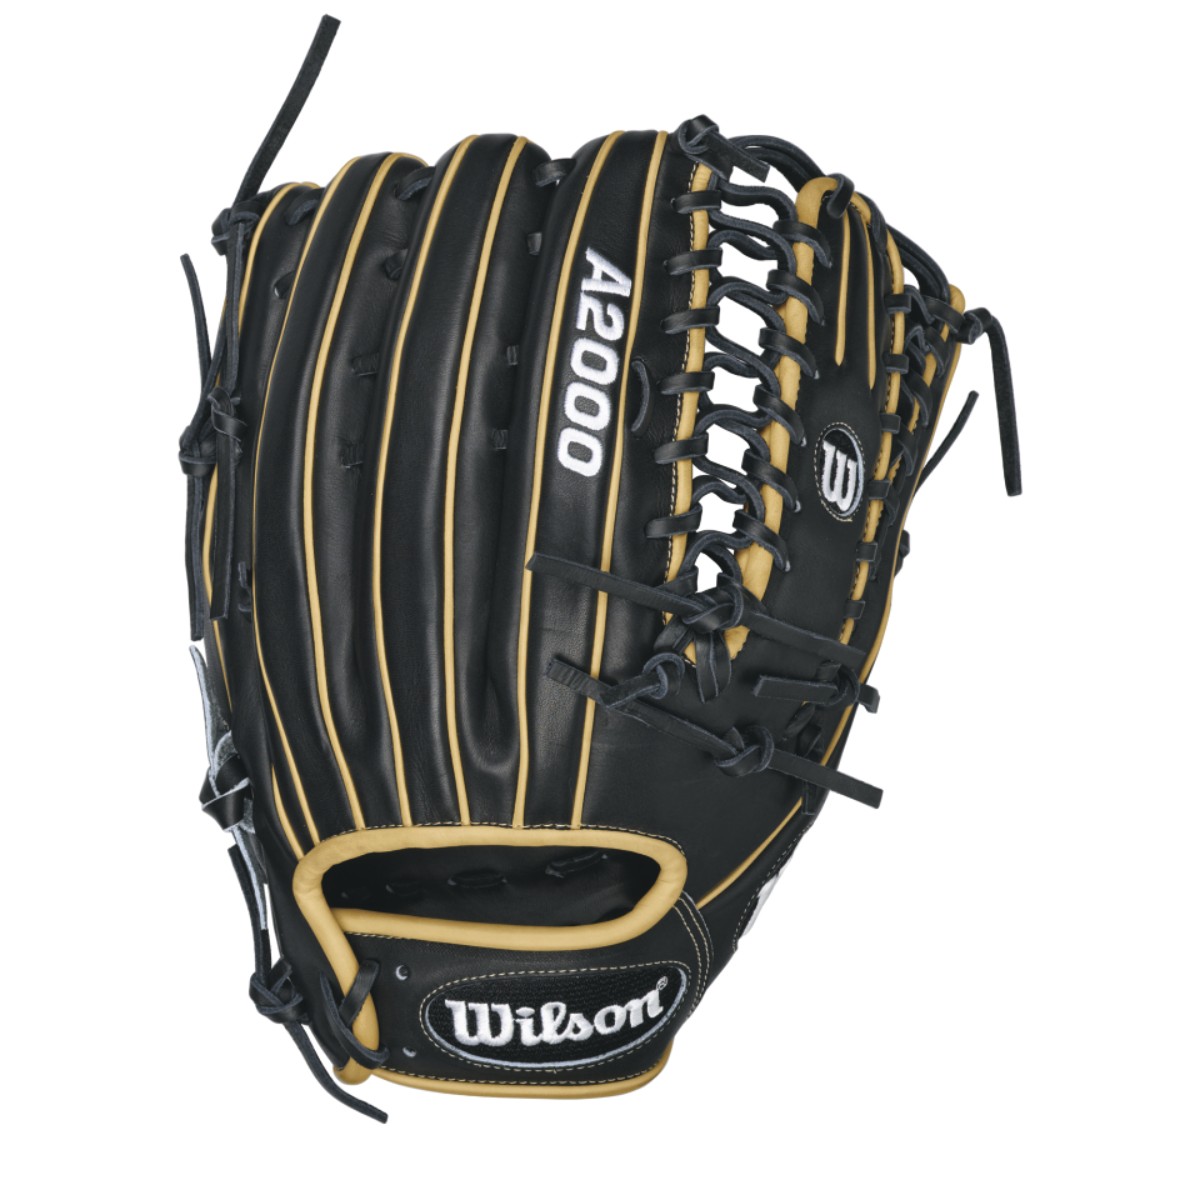 Wilson A2000 Ot6 12.75 Baseball Glove Wta20rb16ot6 6 Finger Trap 12.75 Inch